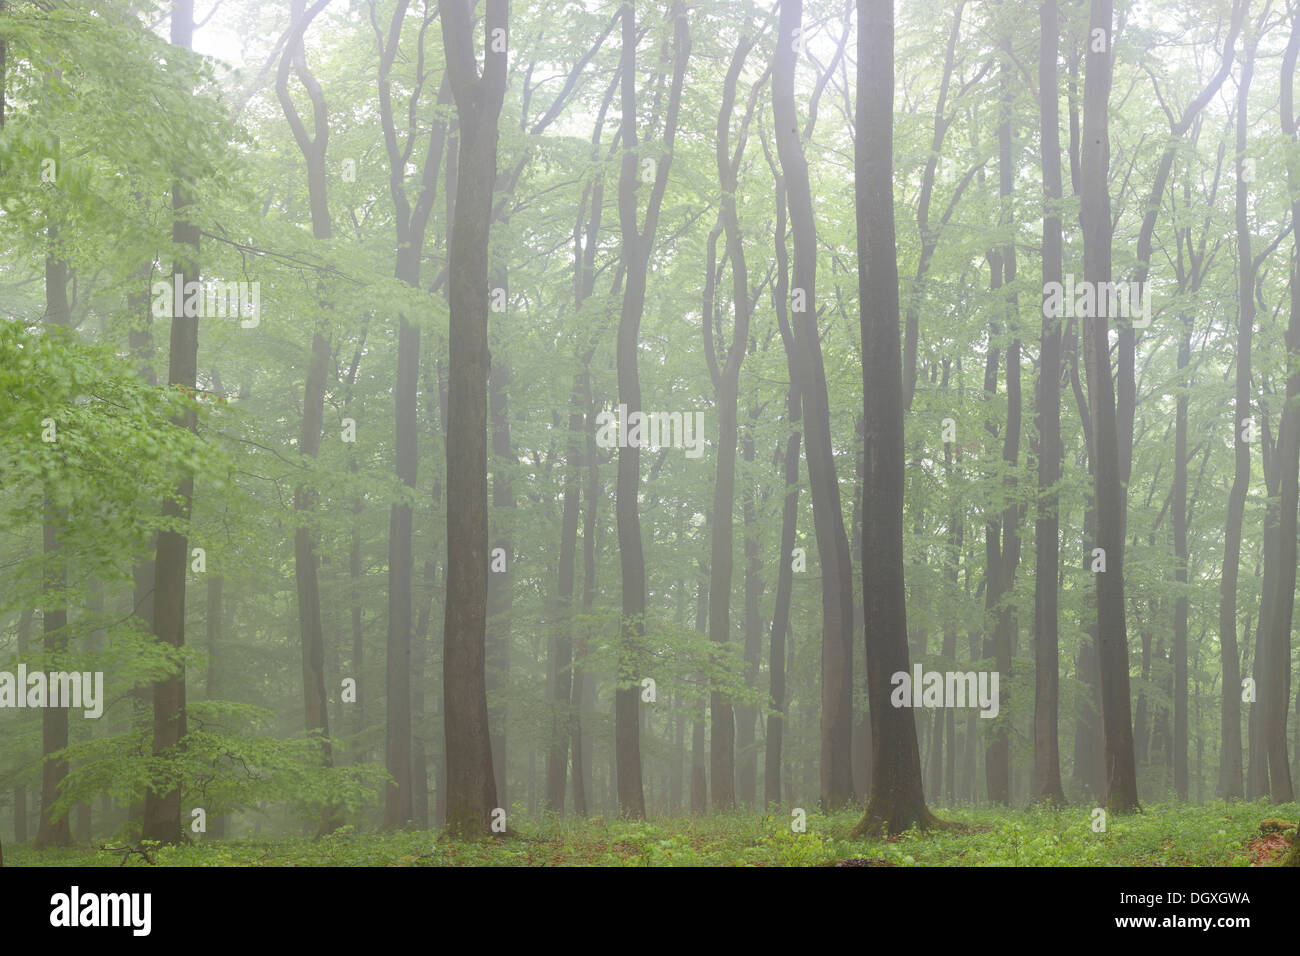 Le brouillard dans une forêt de hêtres (Fagus sylvatica), printemps, plusieurs jours après, la foliation Greifenstein, Westerwald, Hesse, Allemagne Banque D'Images